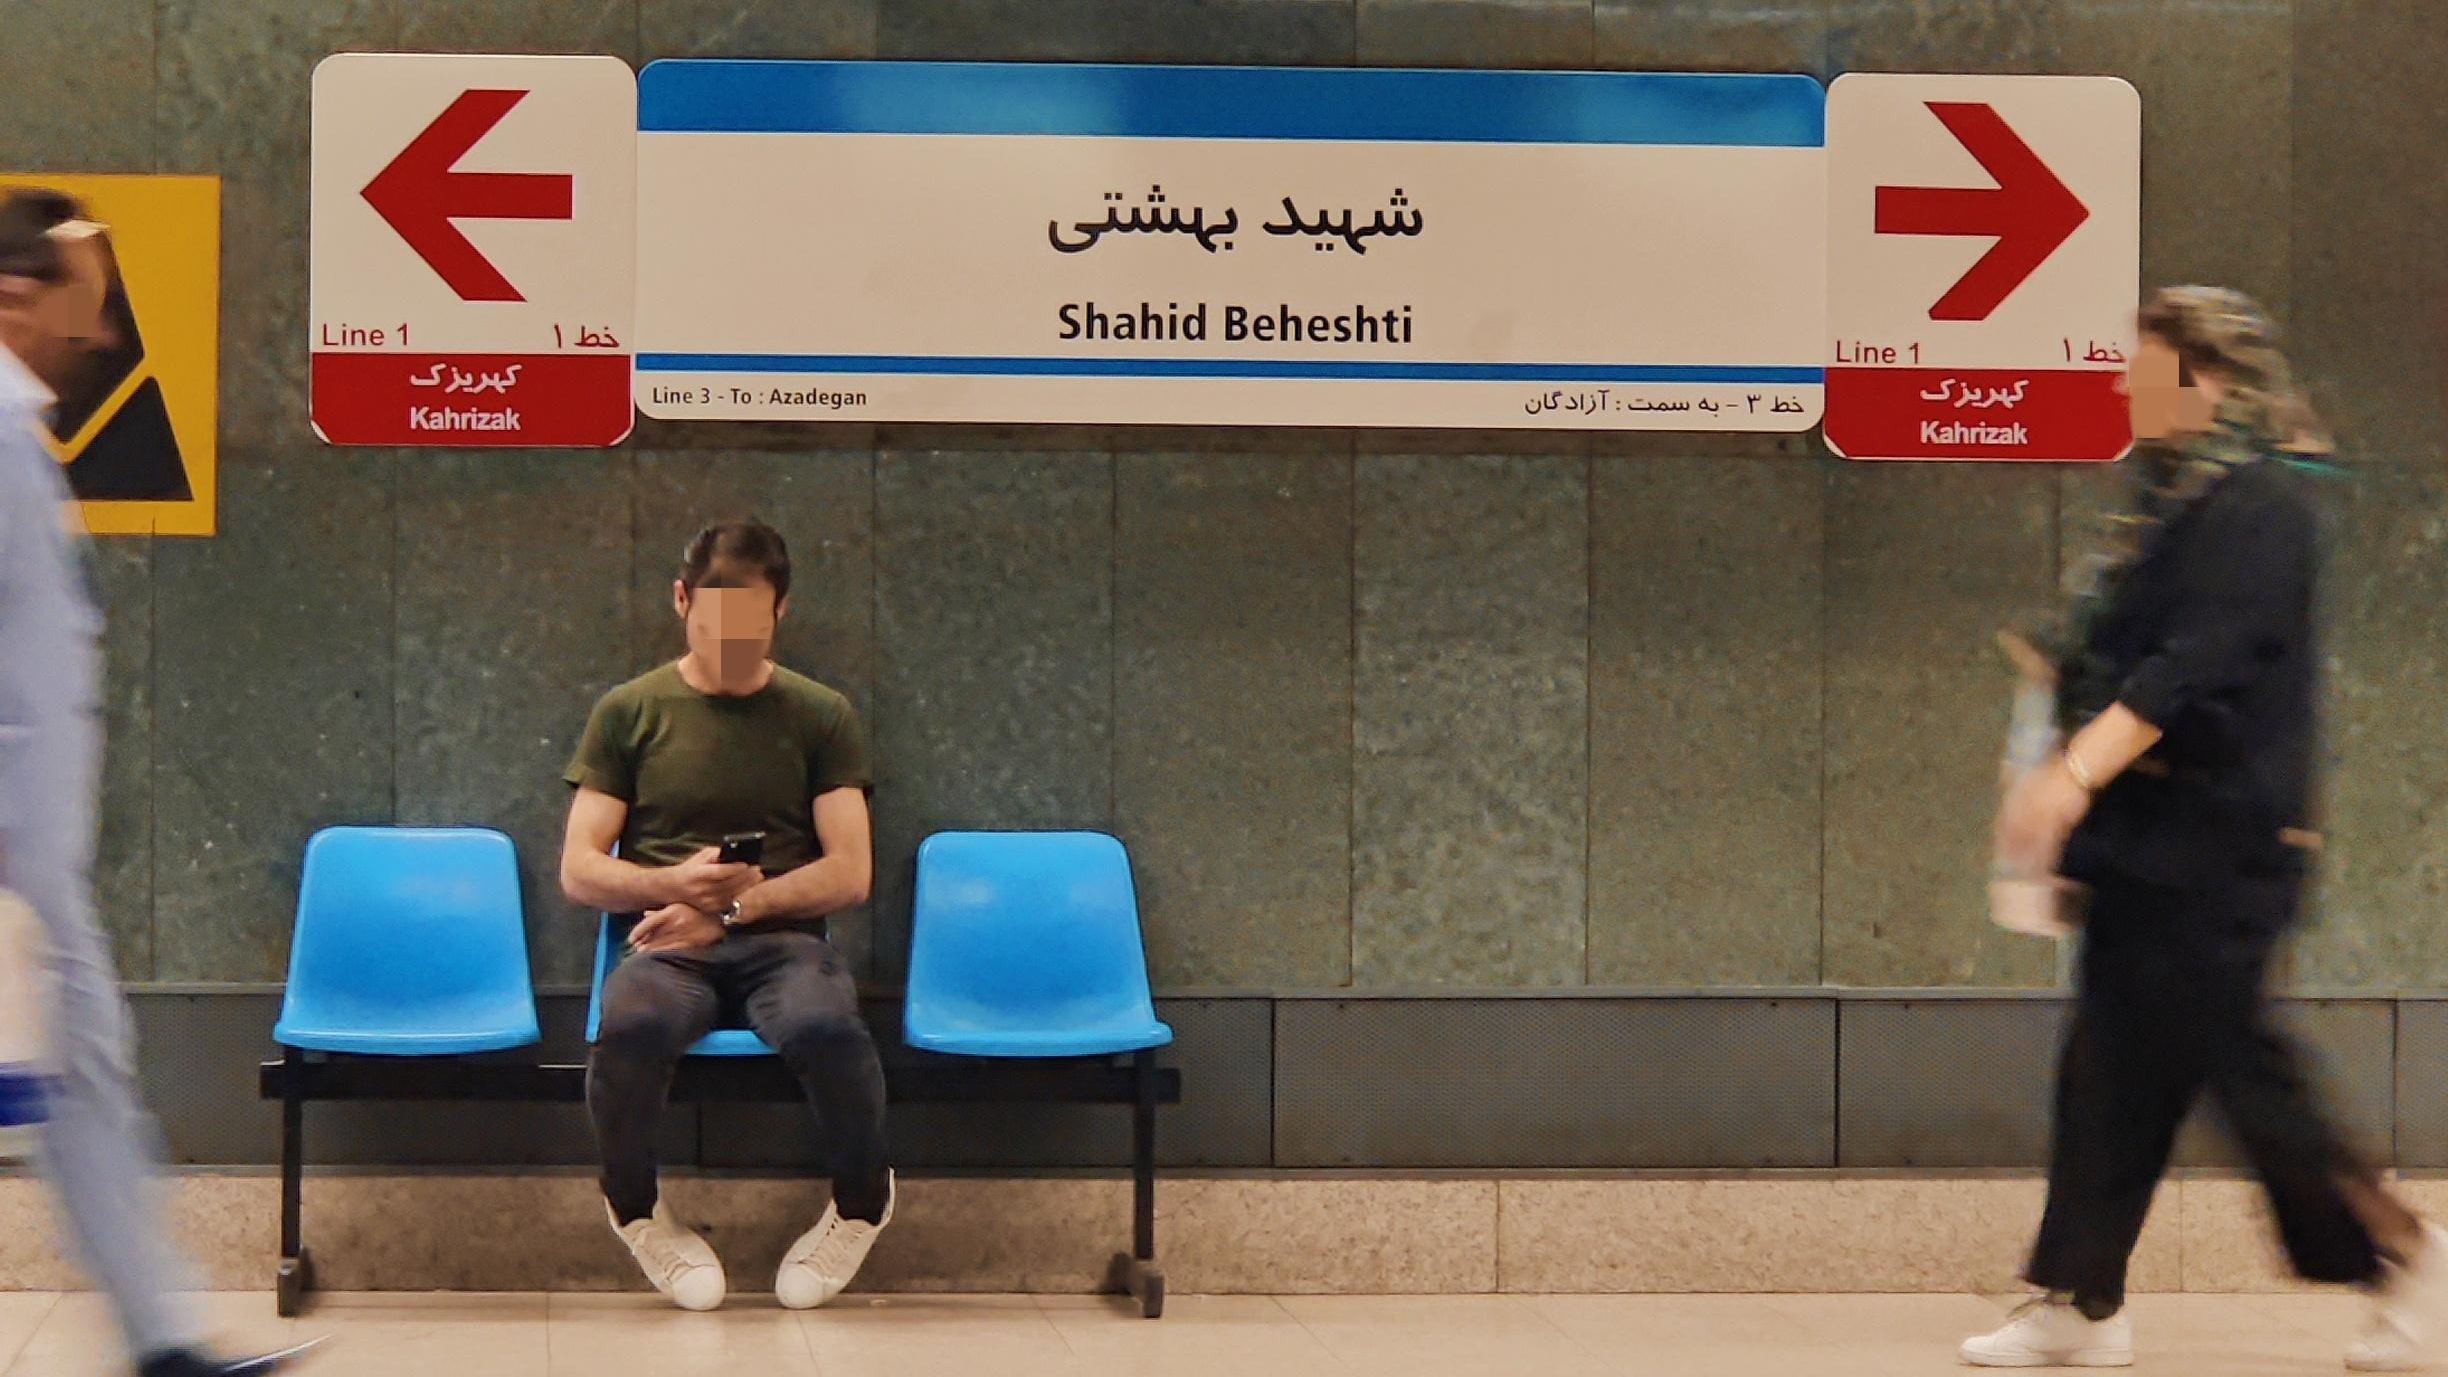 ایستگاه مترو شهید بهشتی